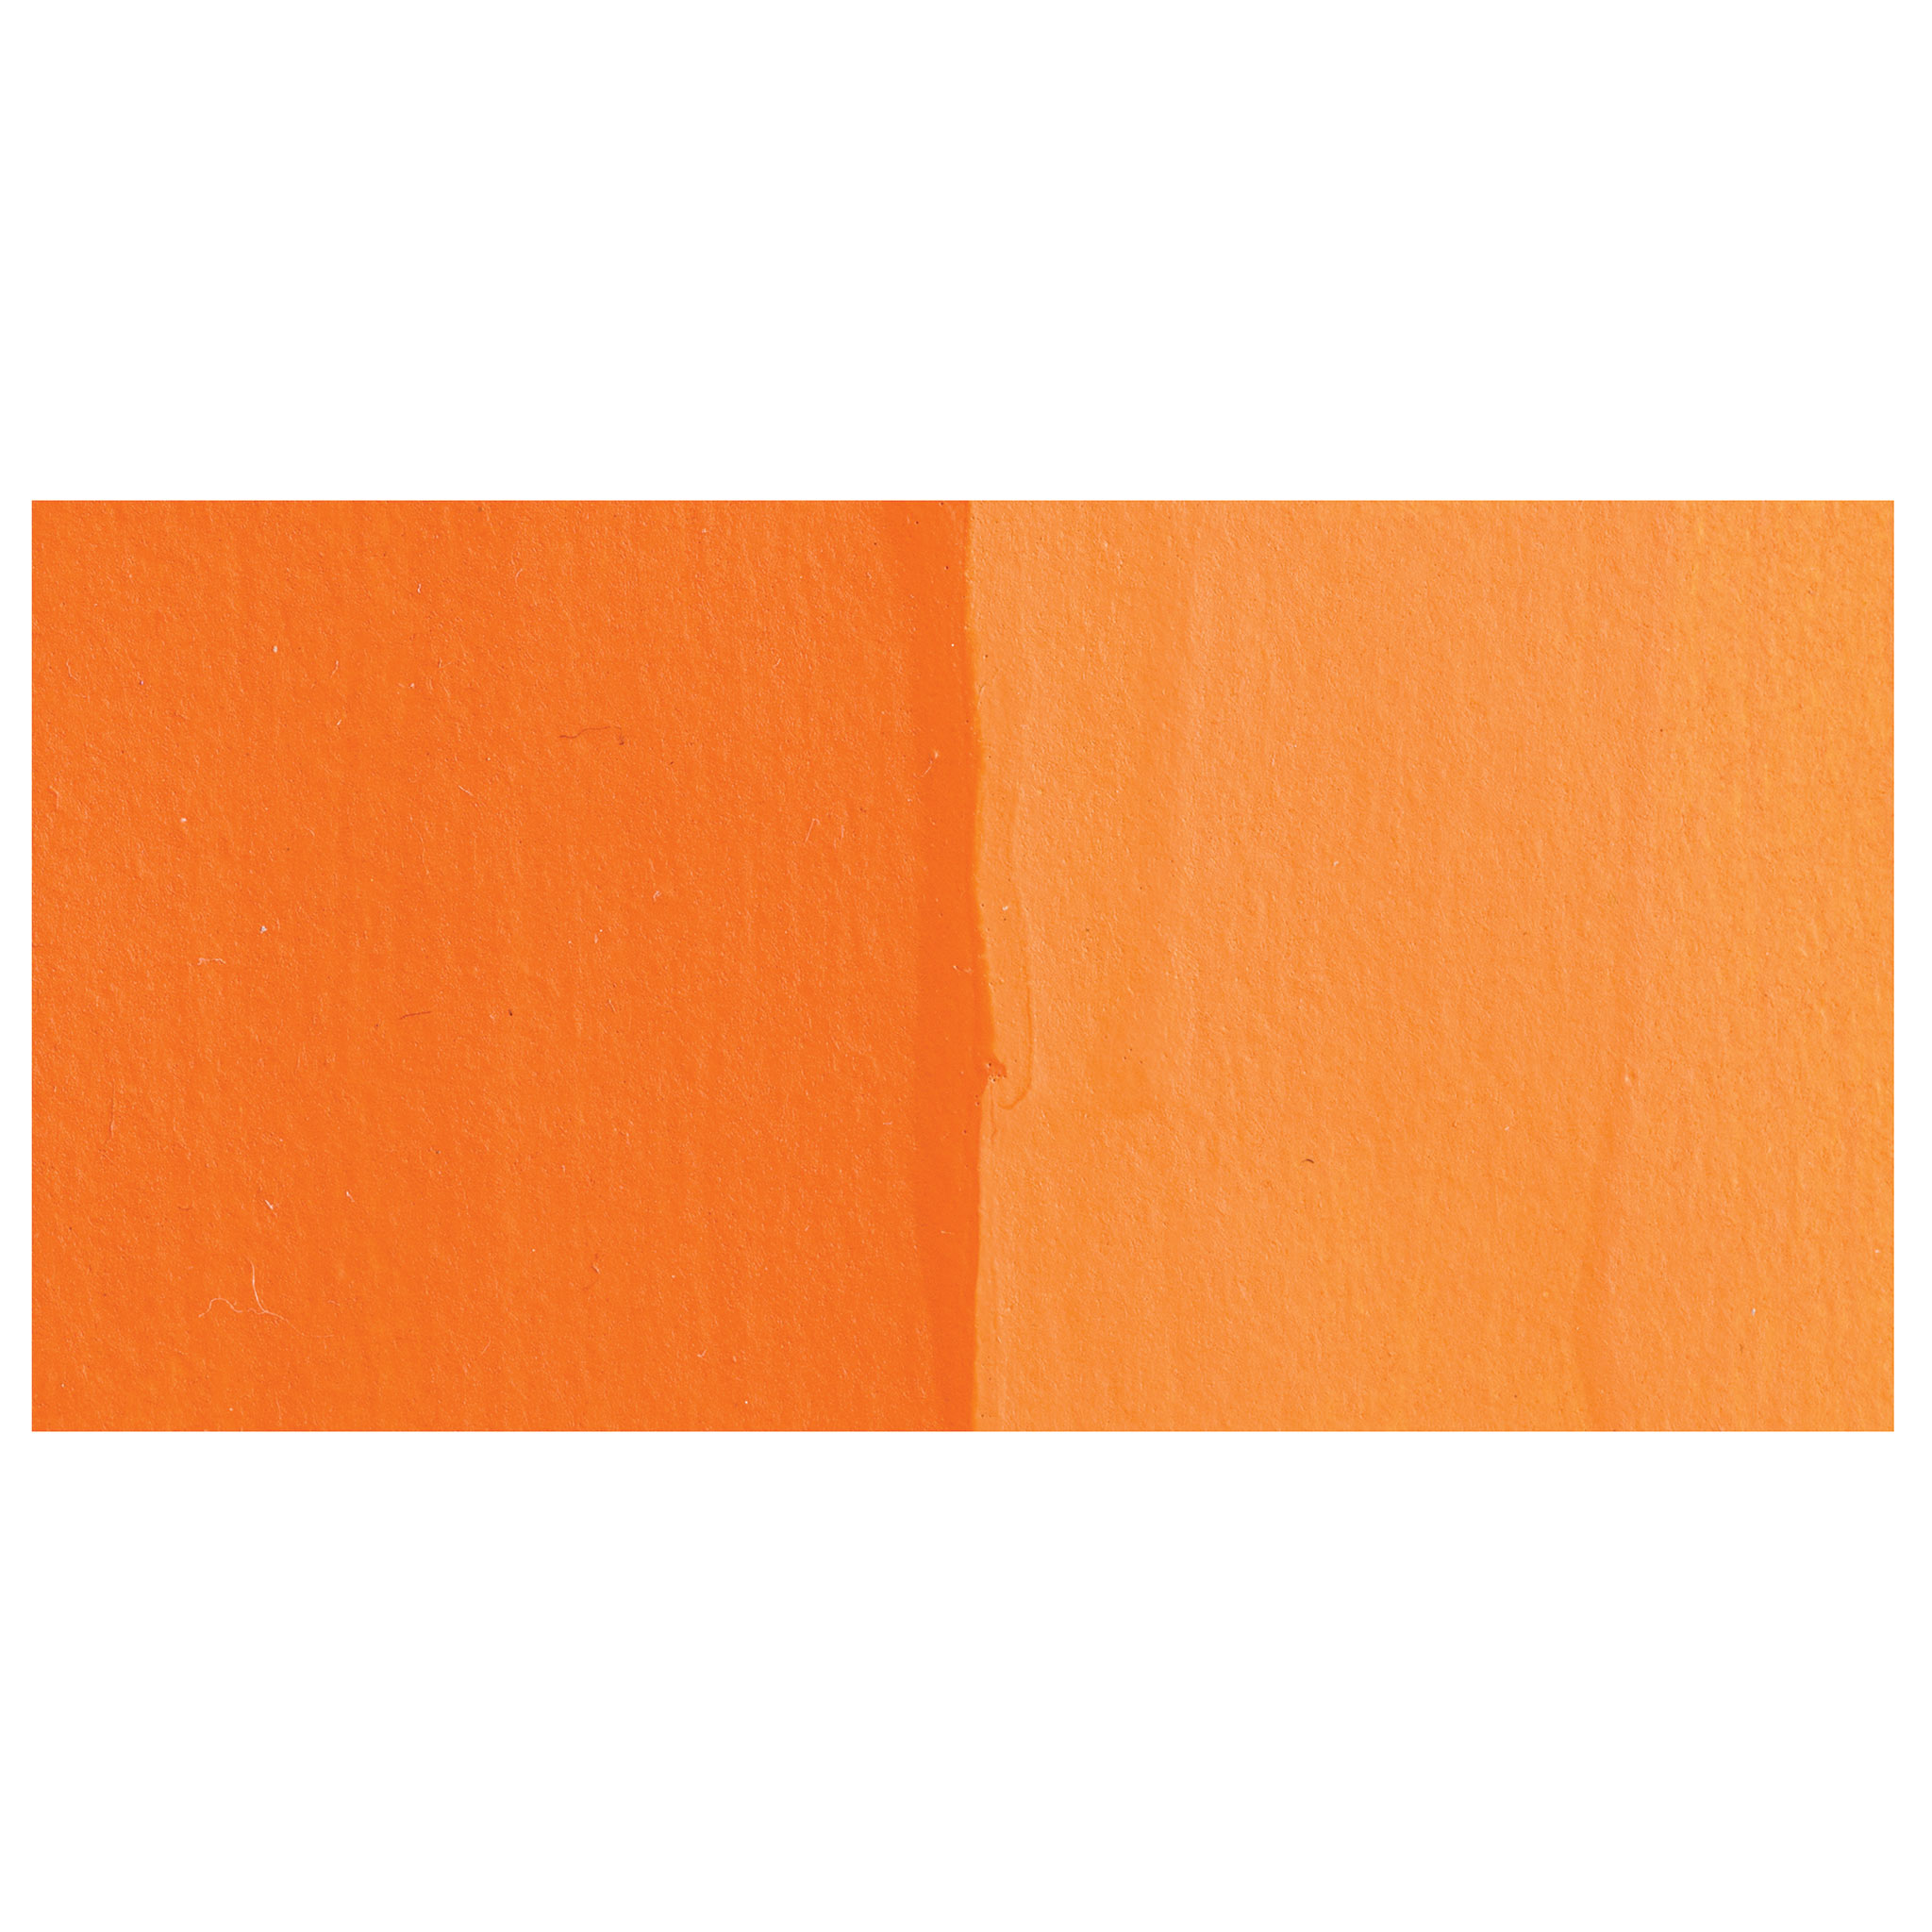 Alpha6 Alphakrylic Acrylic Paint - Alpha Orange, 5 oz